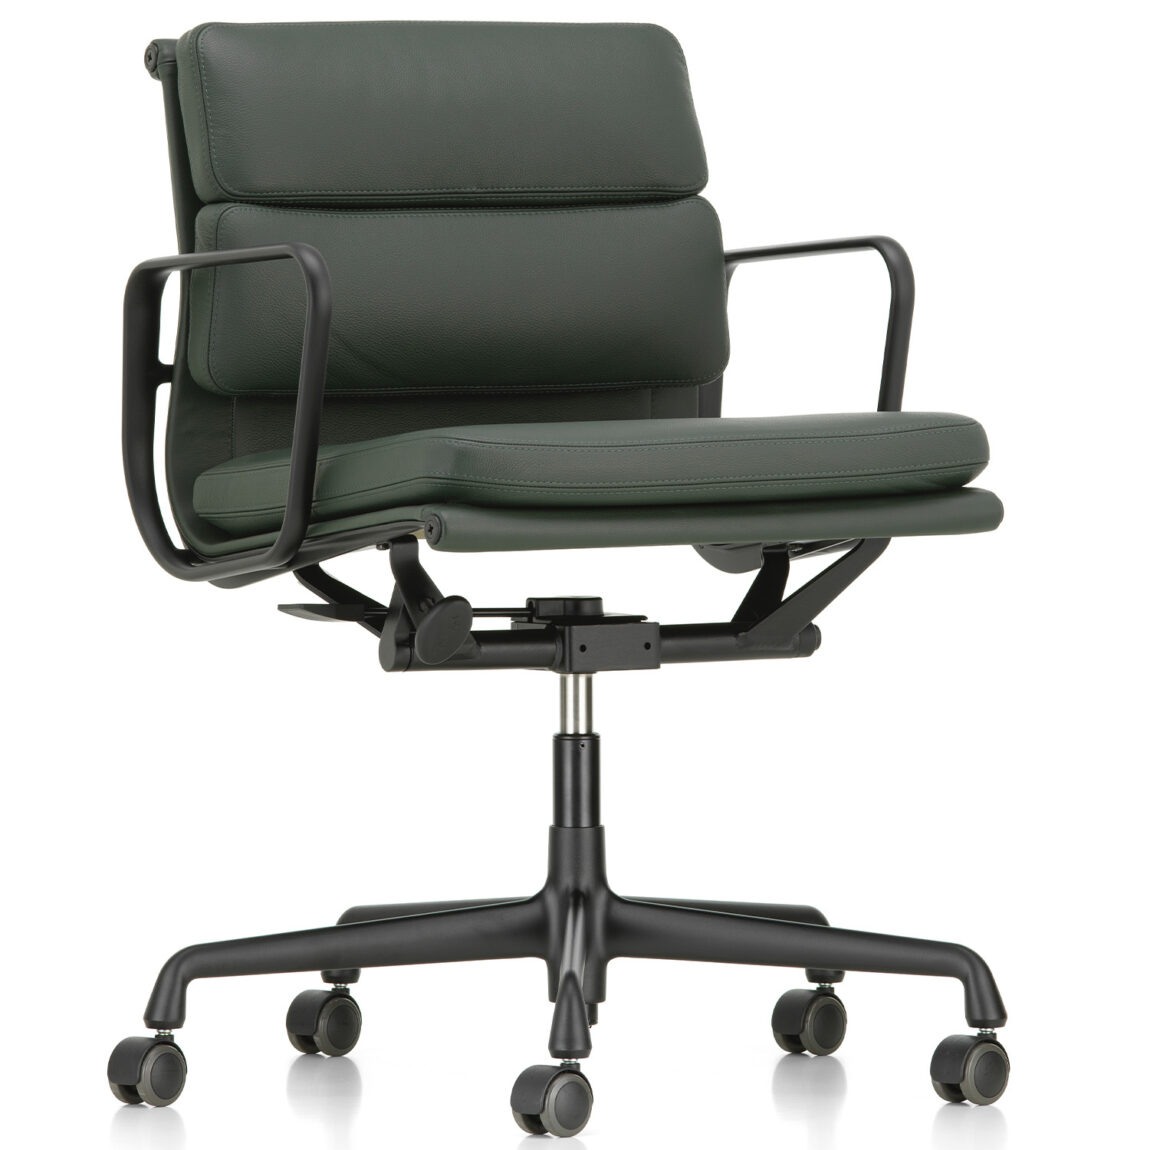 Vitra designové kancelářské židle Soft Pad